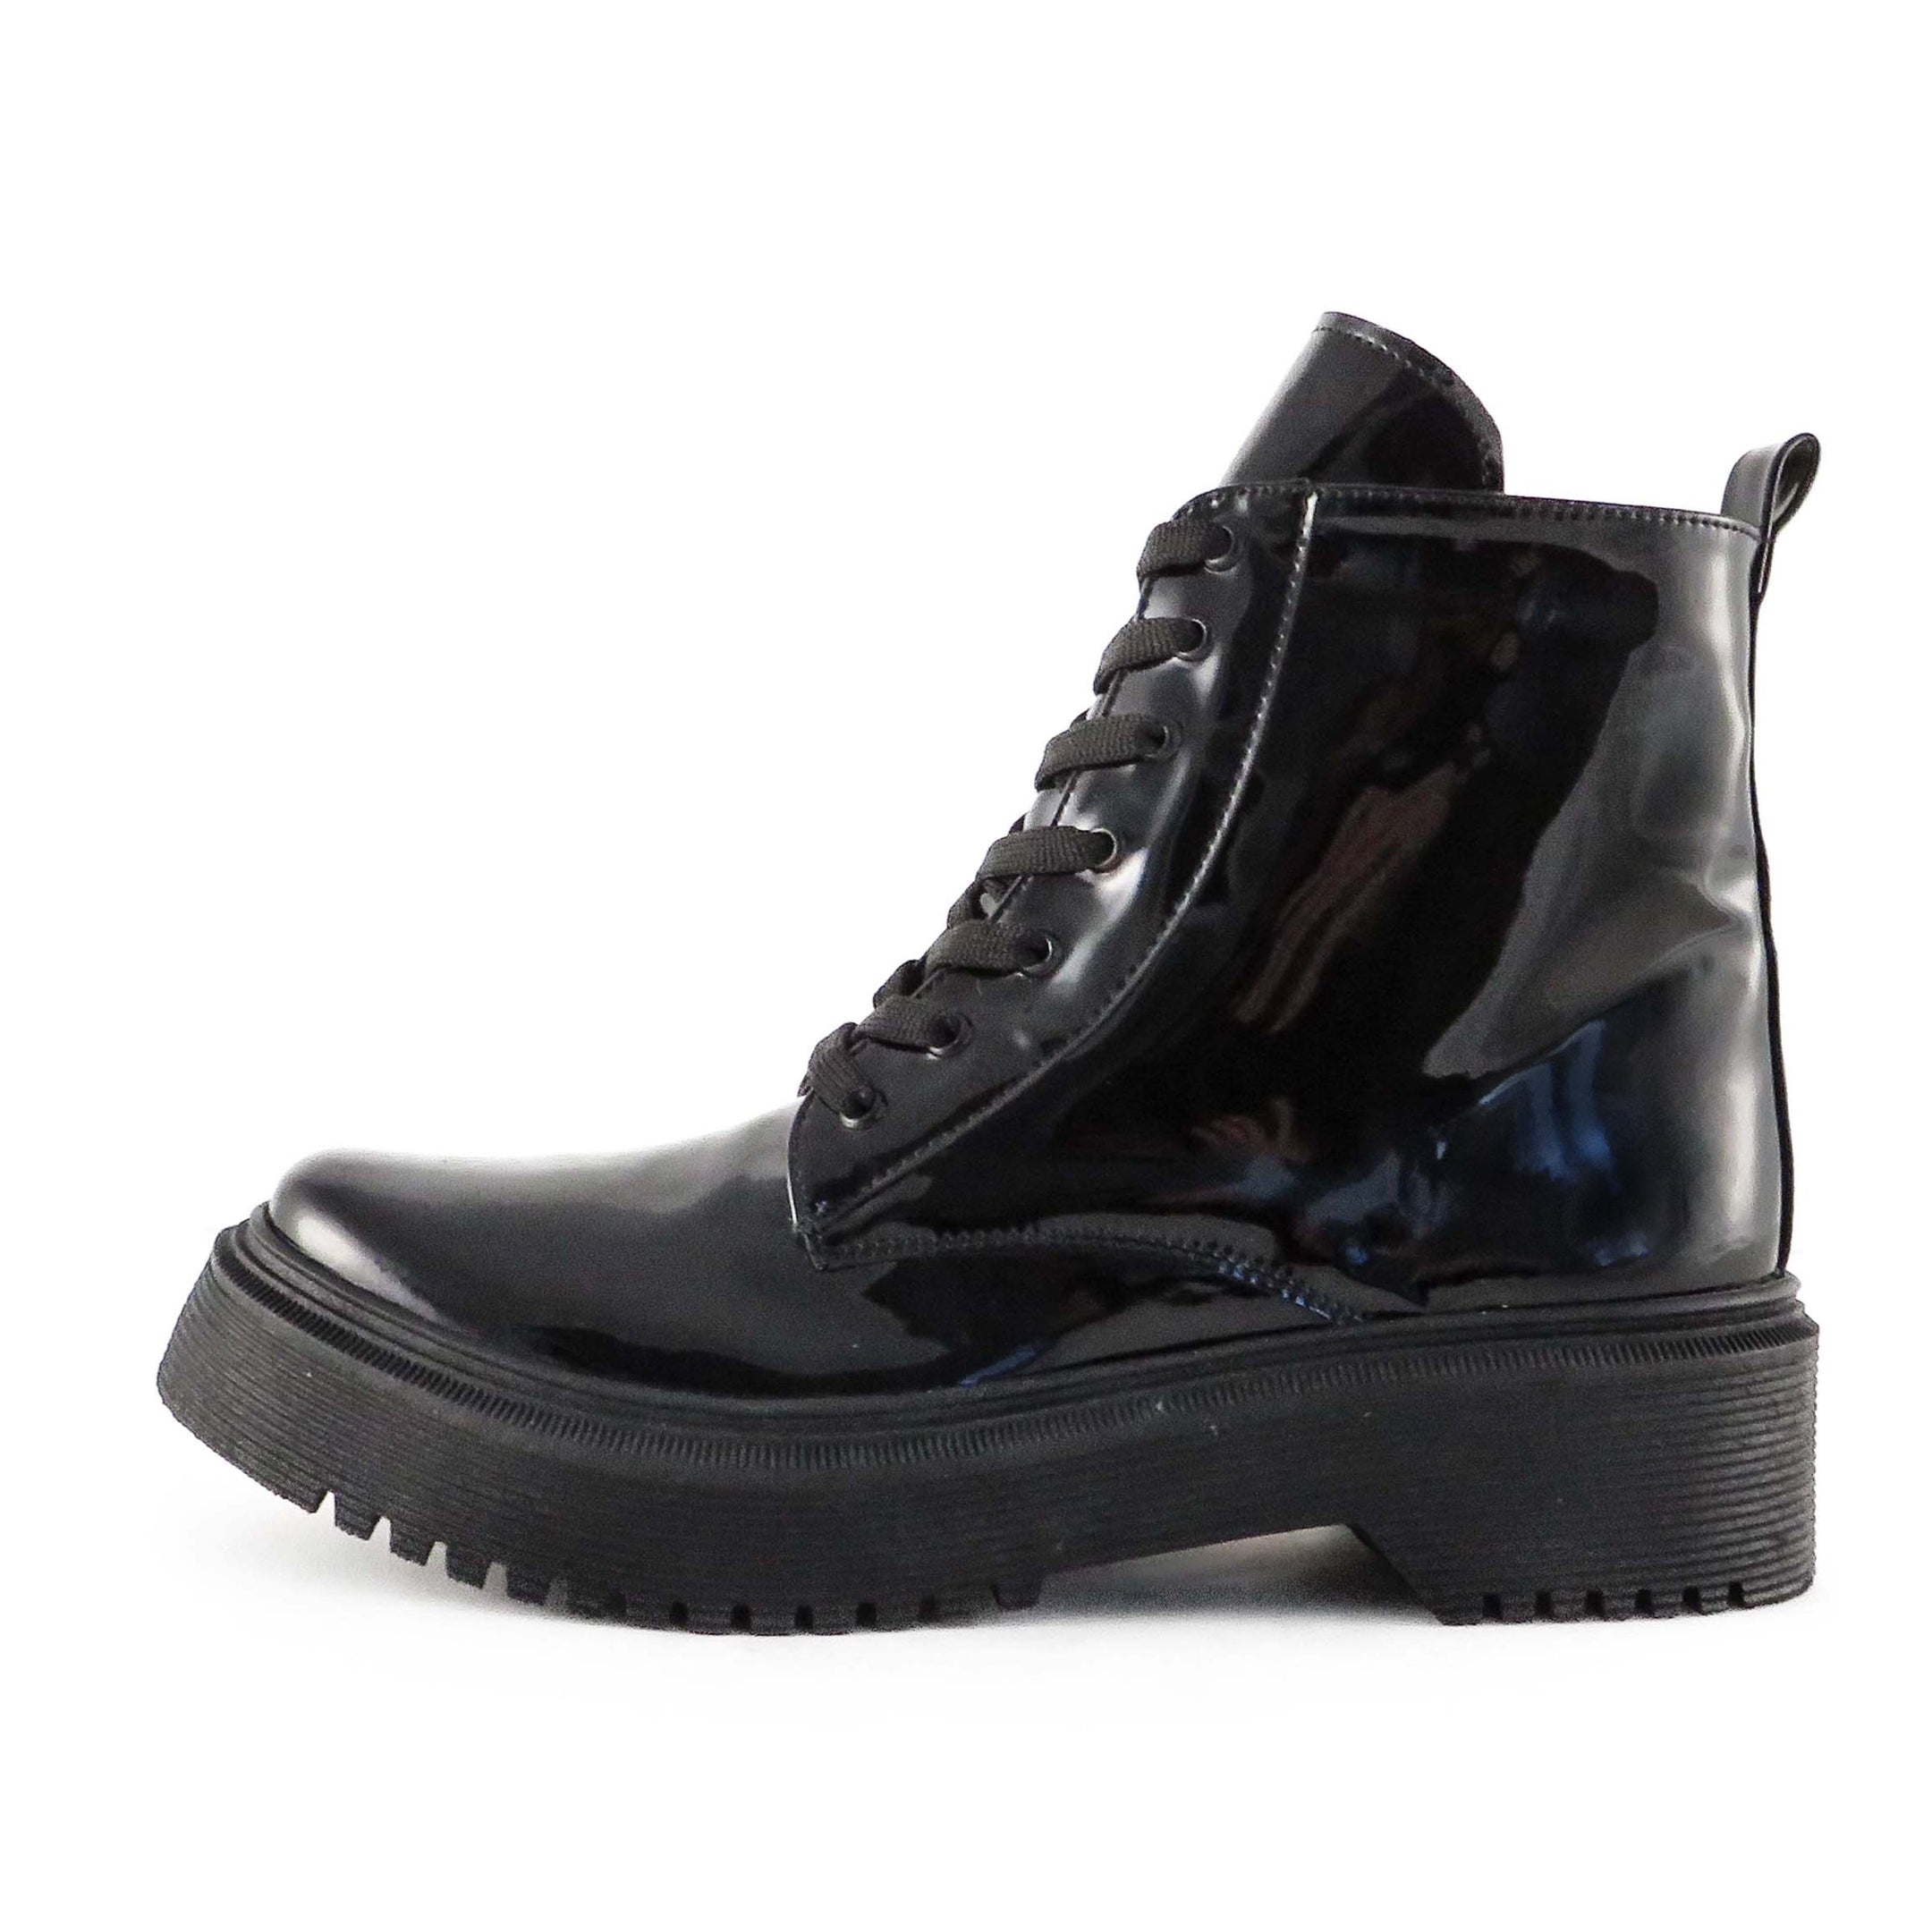 Buy Women's Lunar Combat Boots Patent Black by Nest Shoes